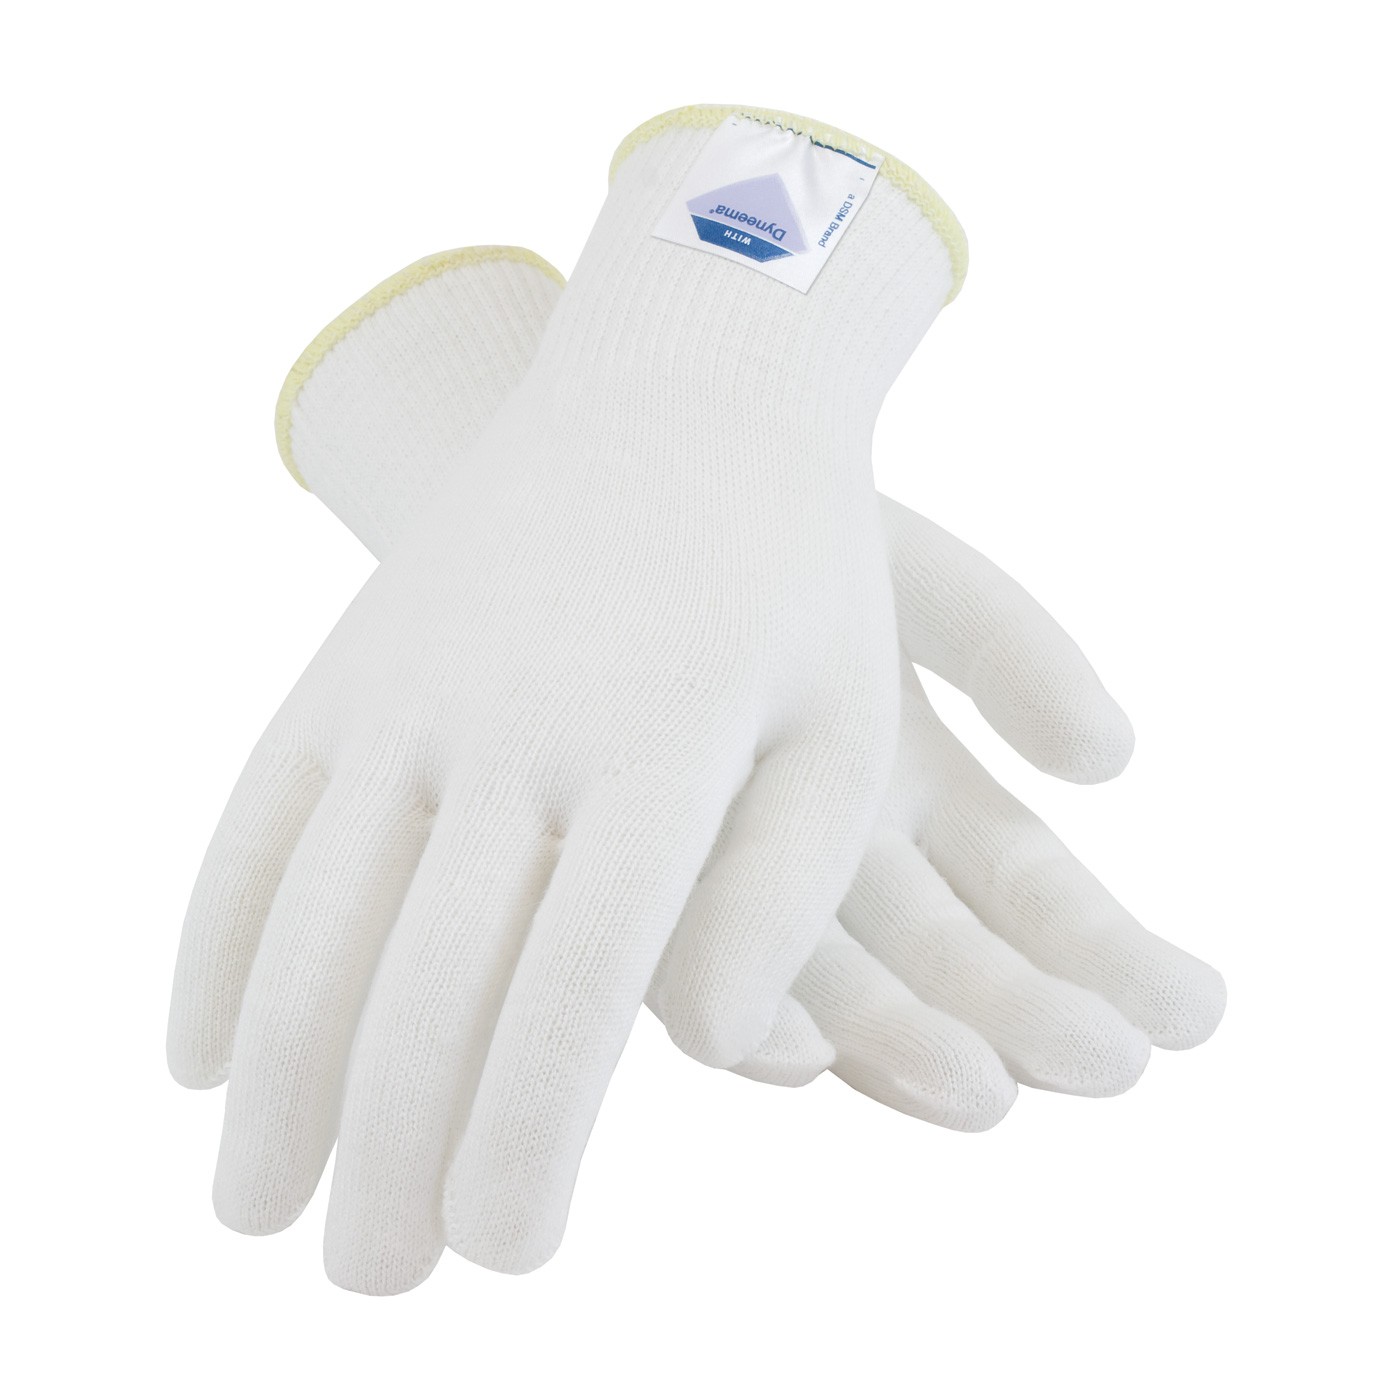 Gloves with Spun Dyneema, 13 Gauge, White, Light Weight, ANSI2 Size Medium